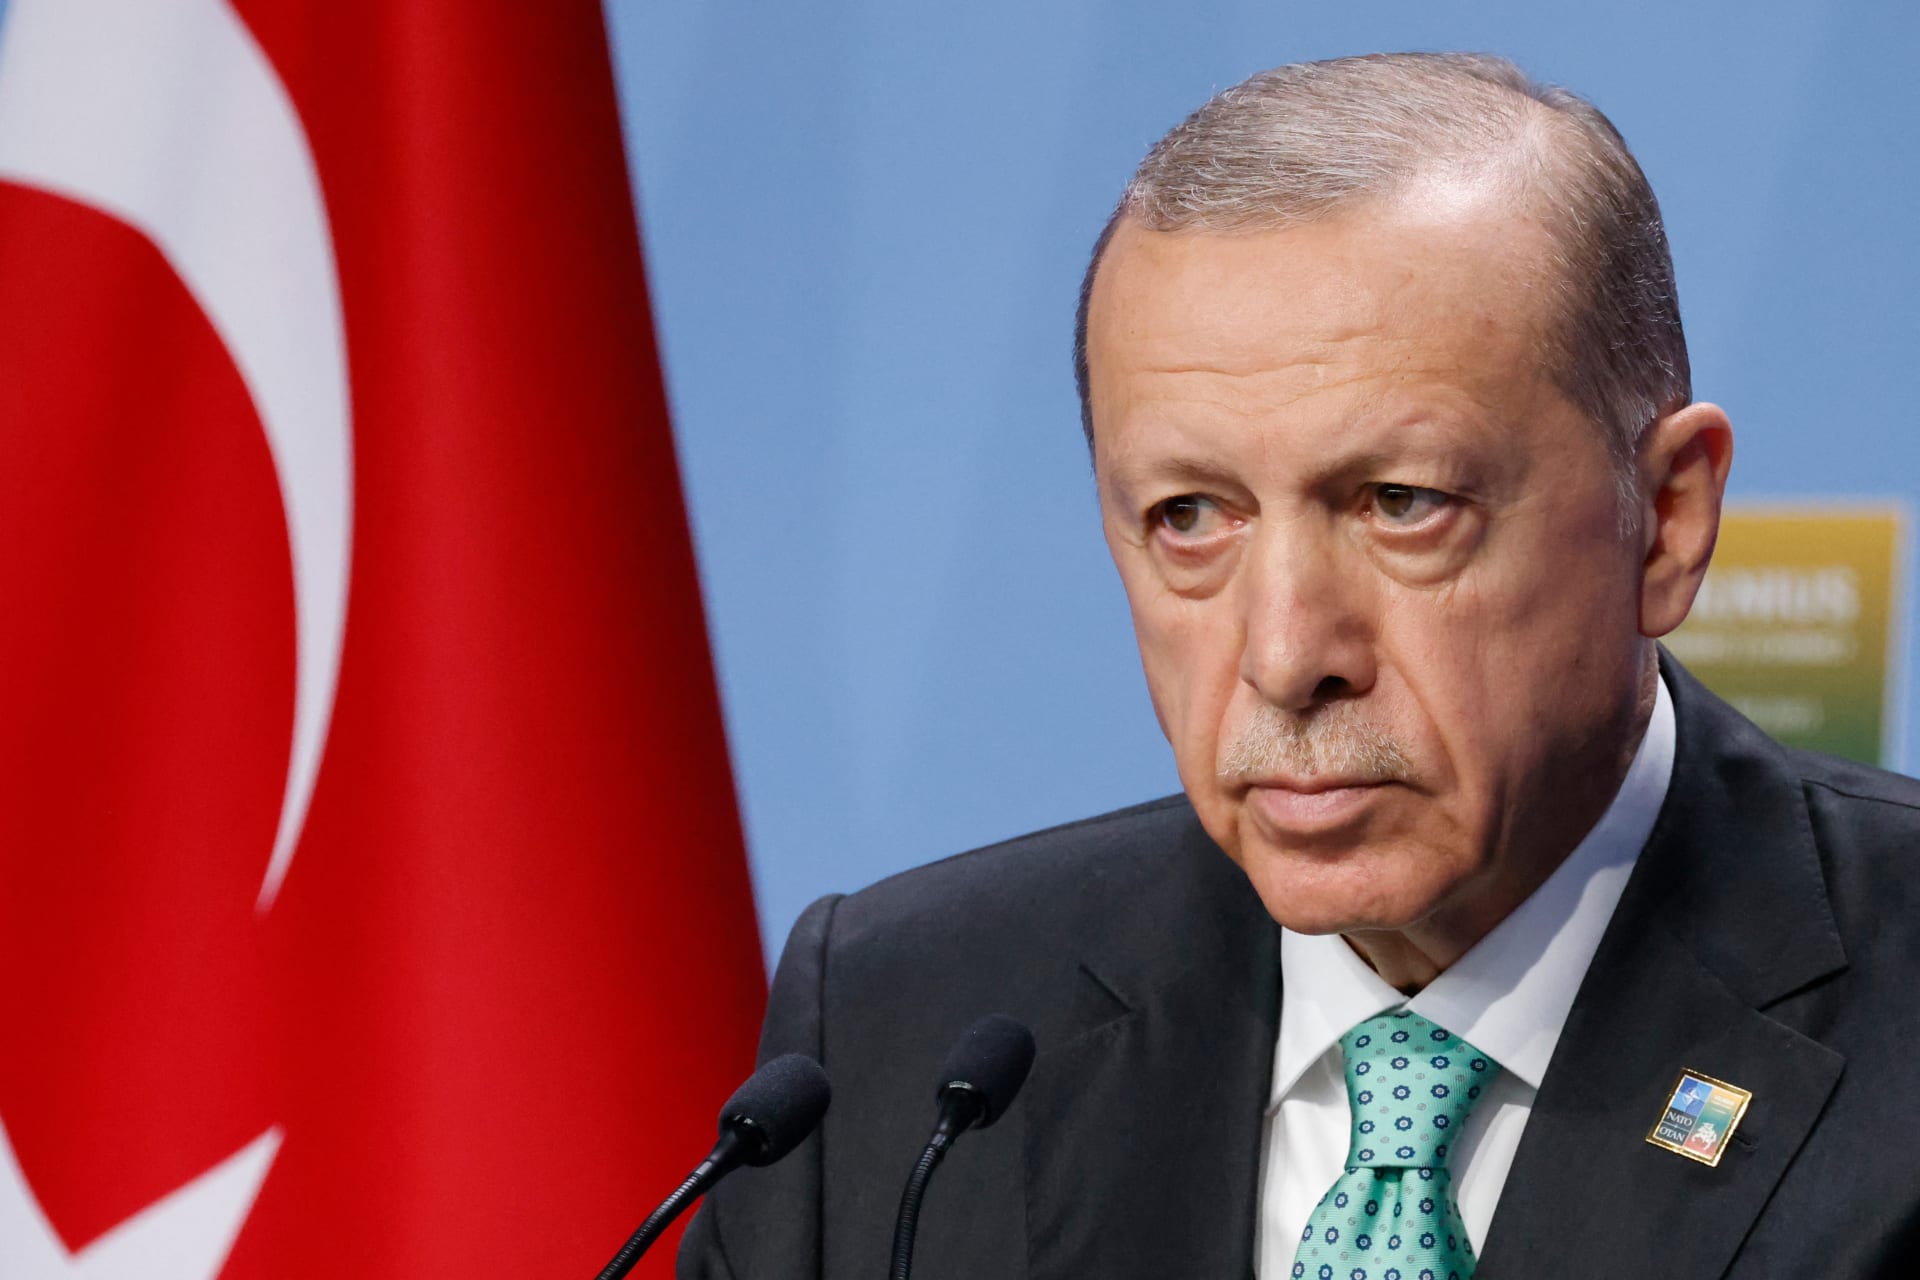  أردوغان: أميركا وبريطانيا سيحولان البحر الأحمر إلى «بحر دماء»